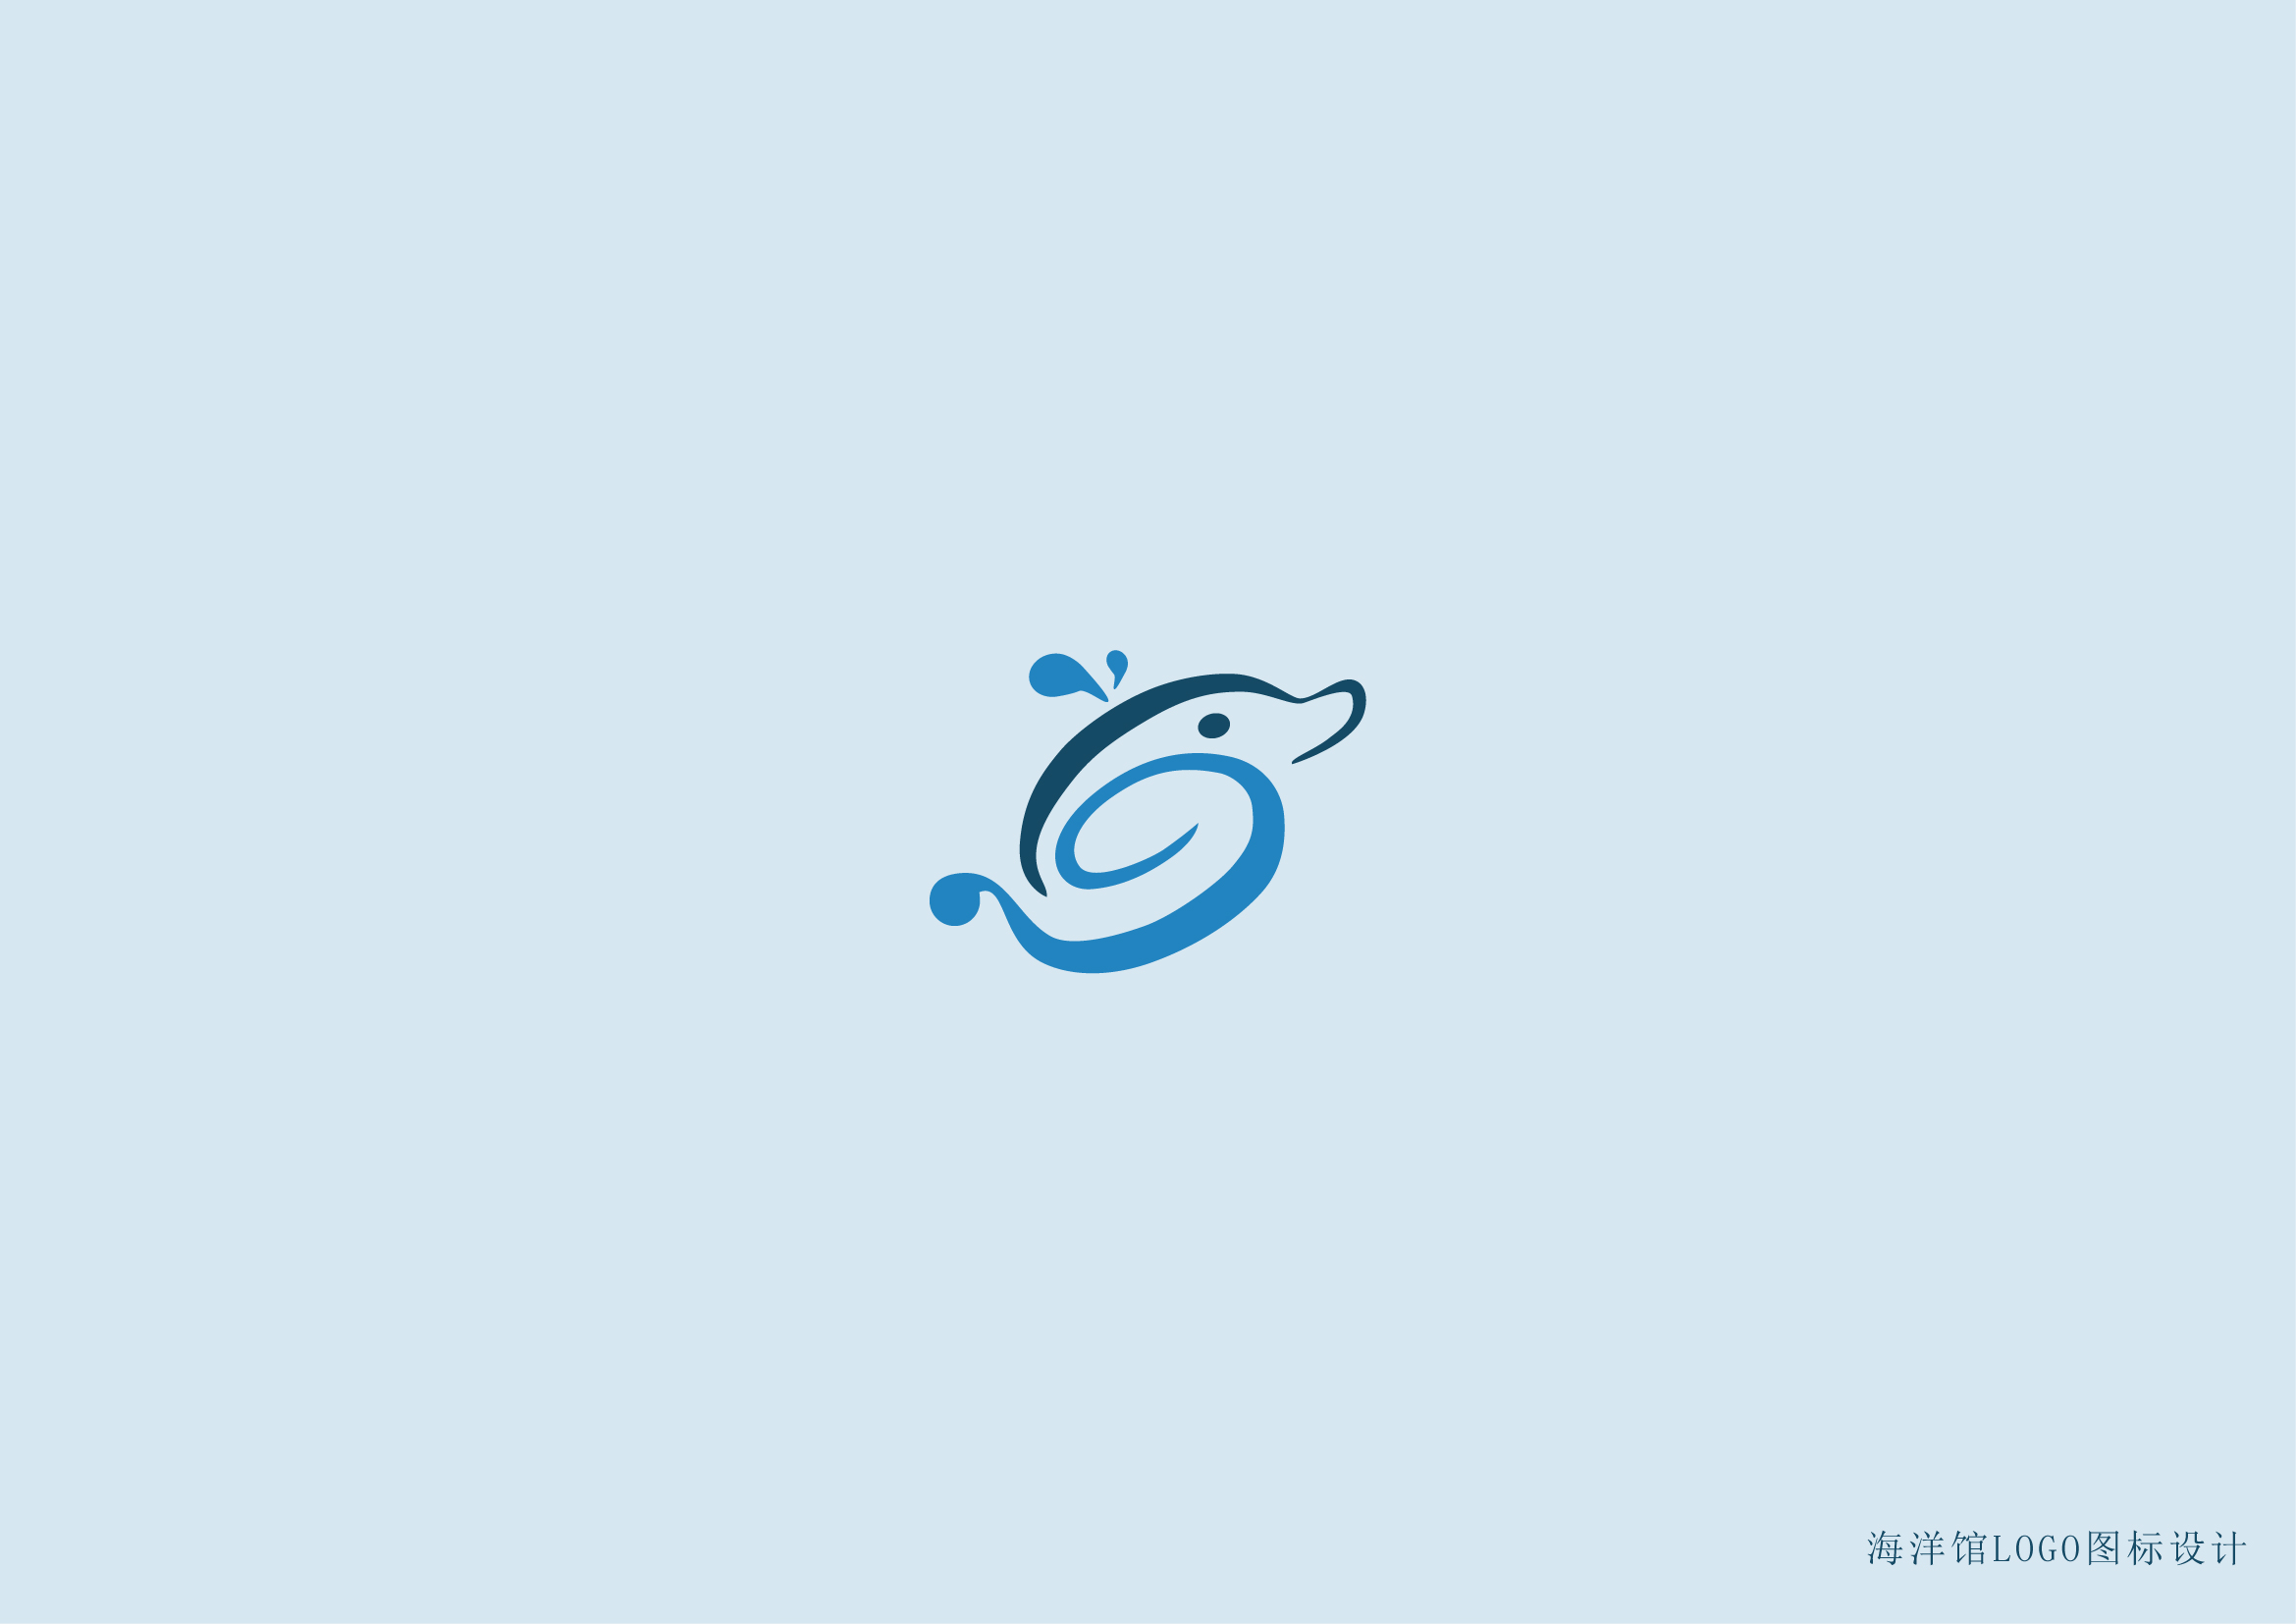 海洋馆logo图标设计.